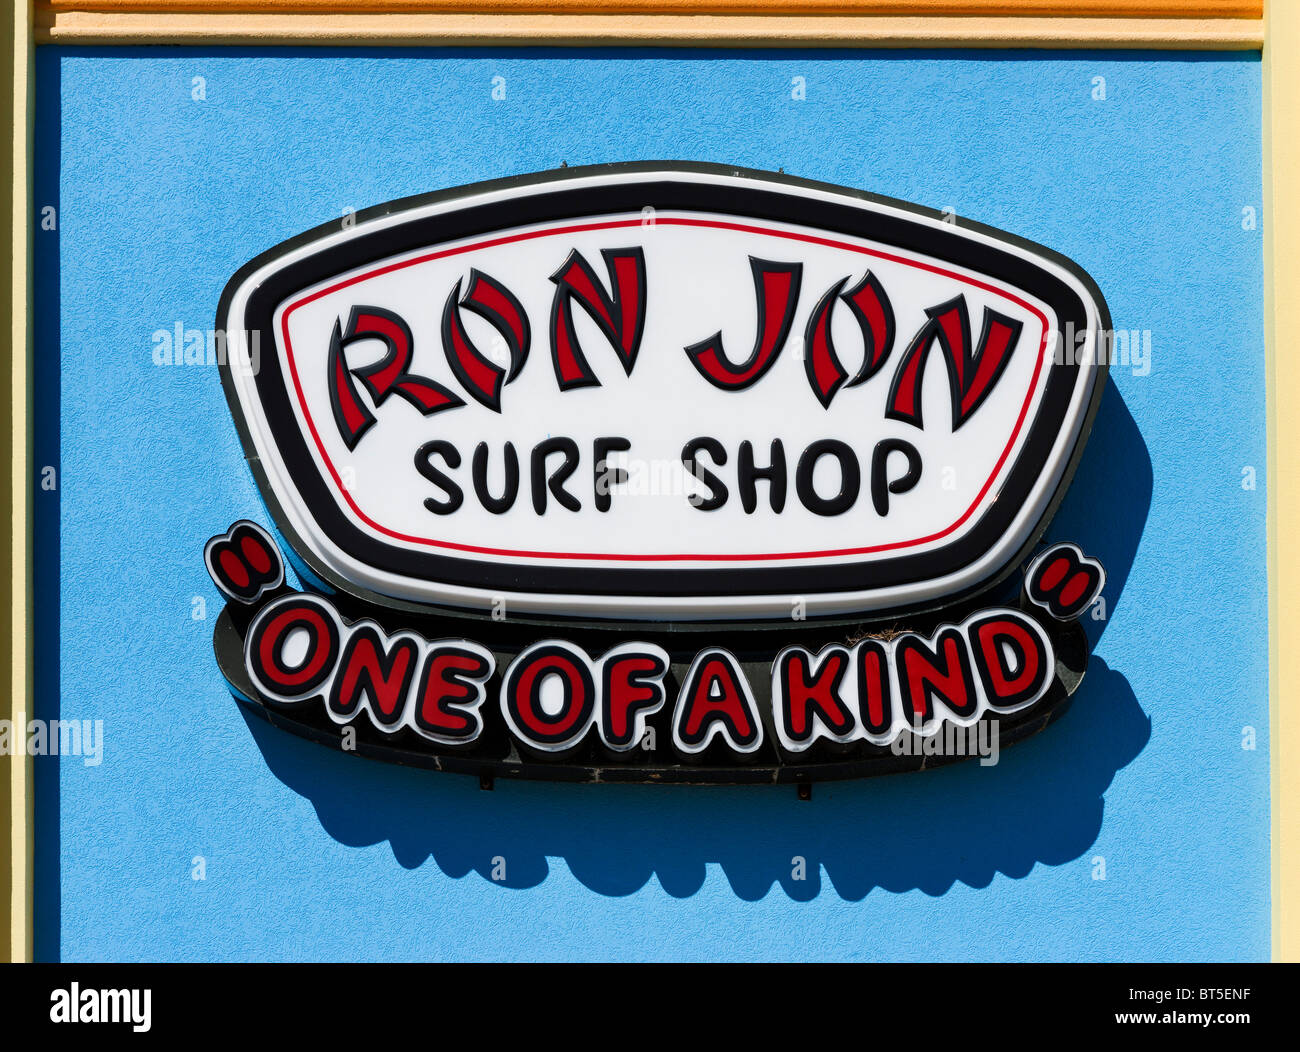 Ron Jon Surf Shop, Cocoa Beach, Space Coast, Florida, USA Stock Photo